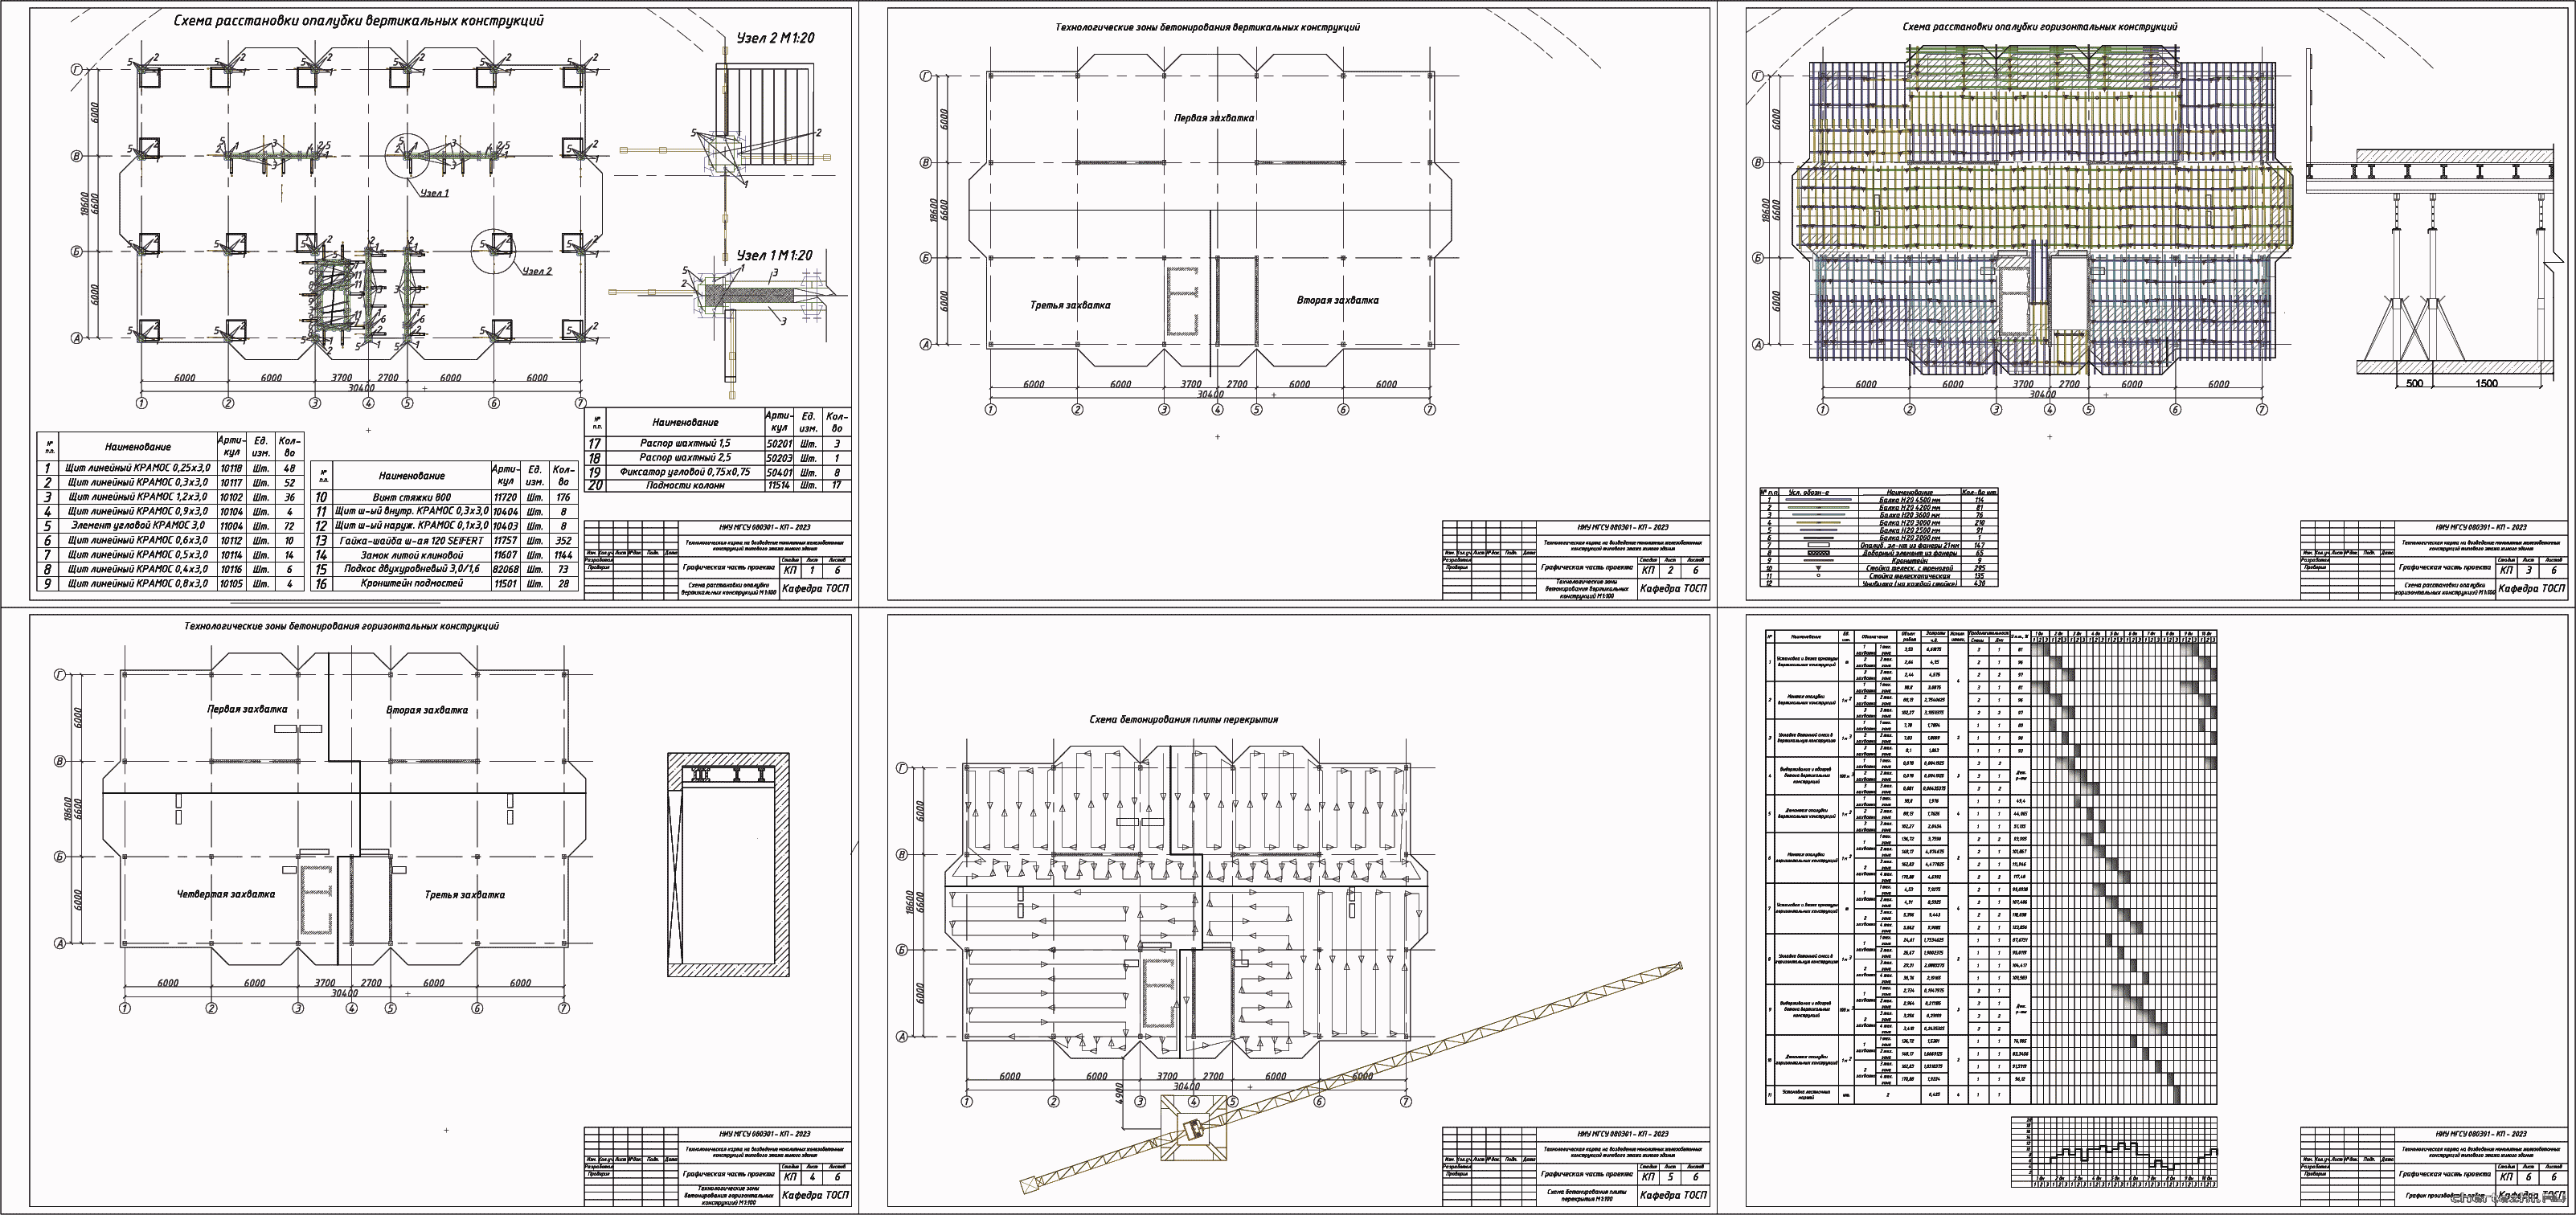 Курсовой проект - ТК на возведение монолитных железобетонных конструкций типового этажа 9-ти этажного жилого дома 30,4 х 18,6 м в г. Саратов